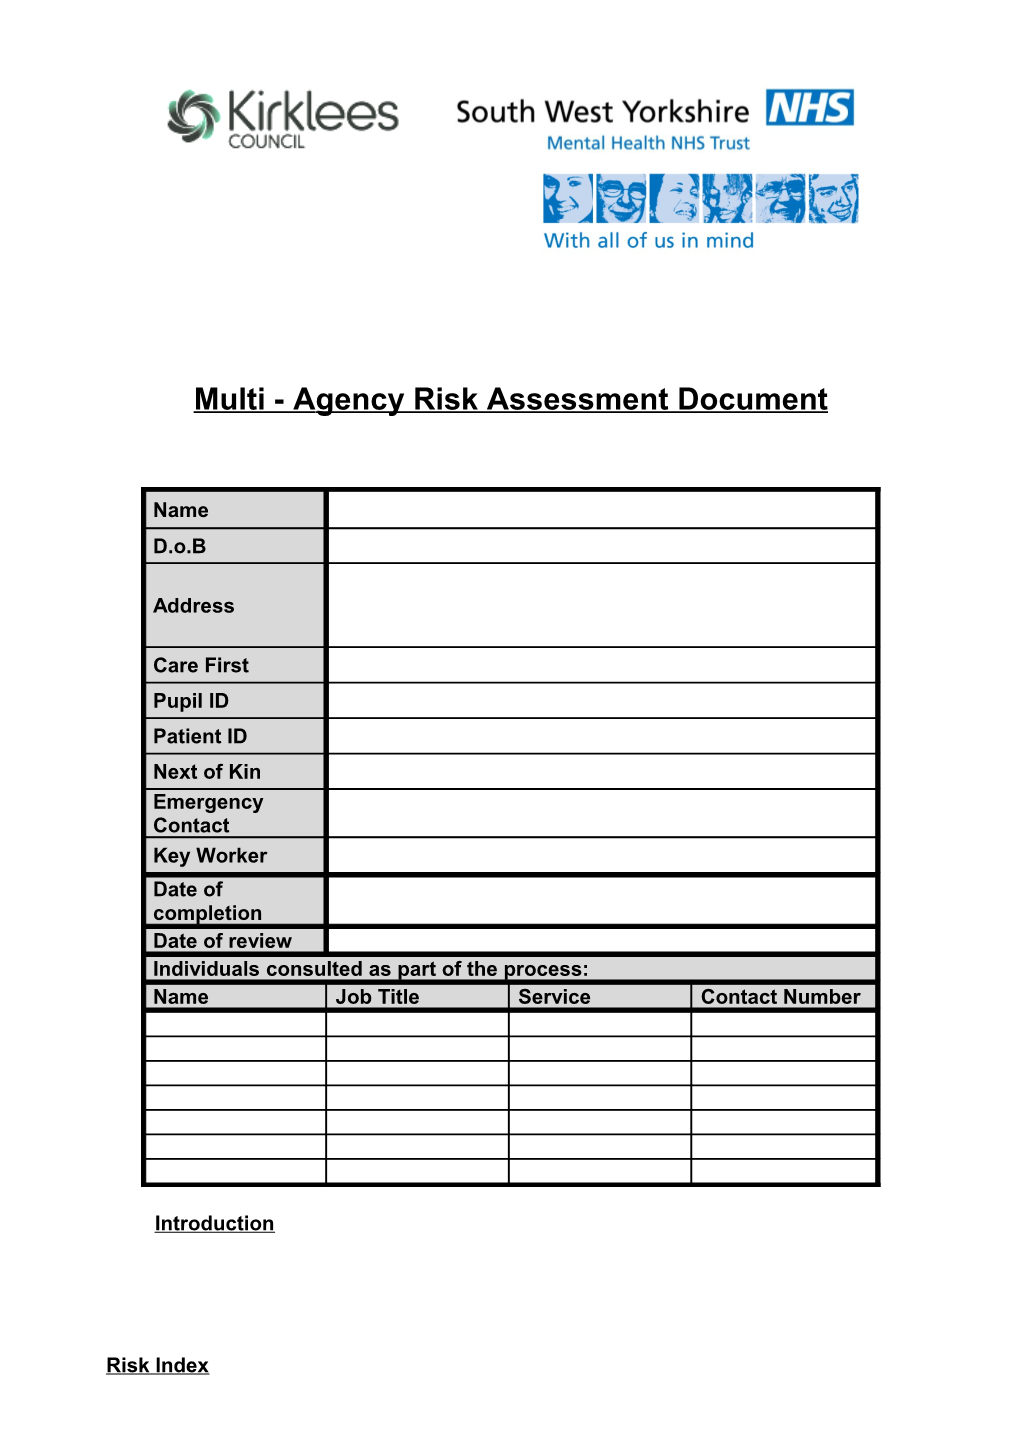 Multi-Agency Risk Assessment Document